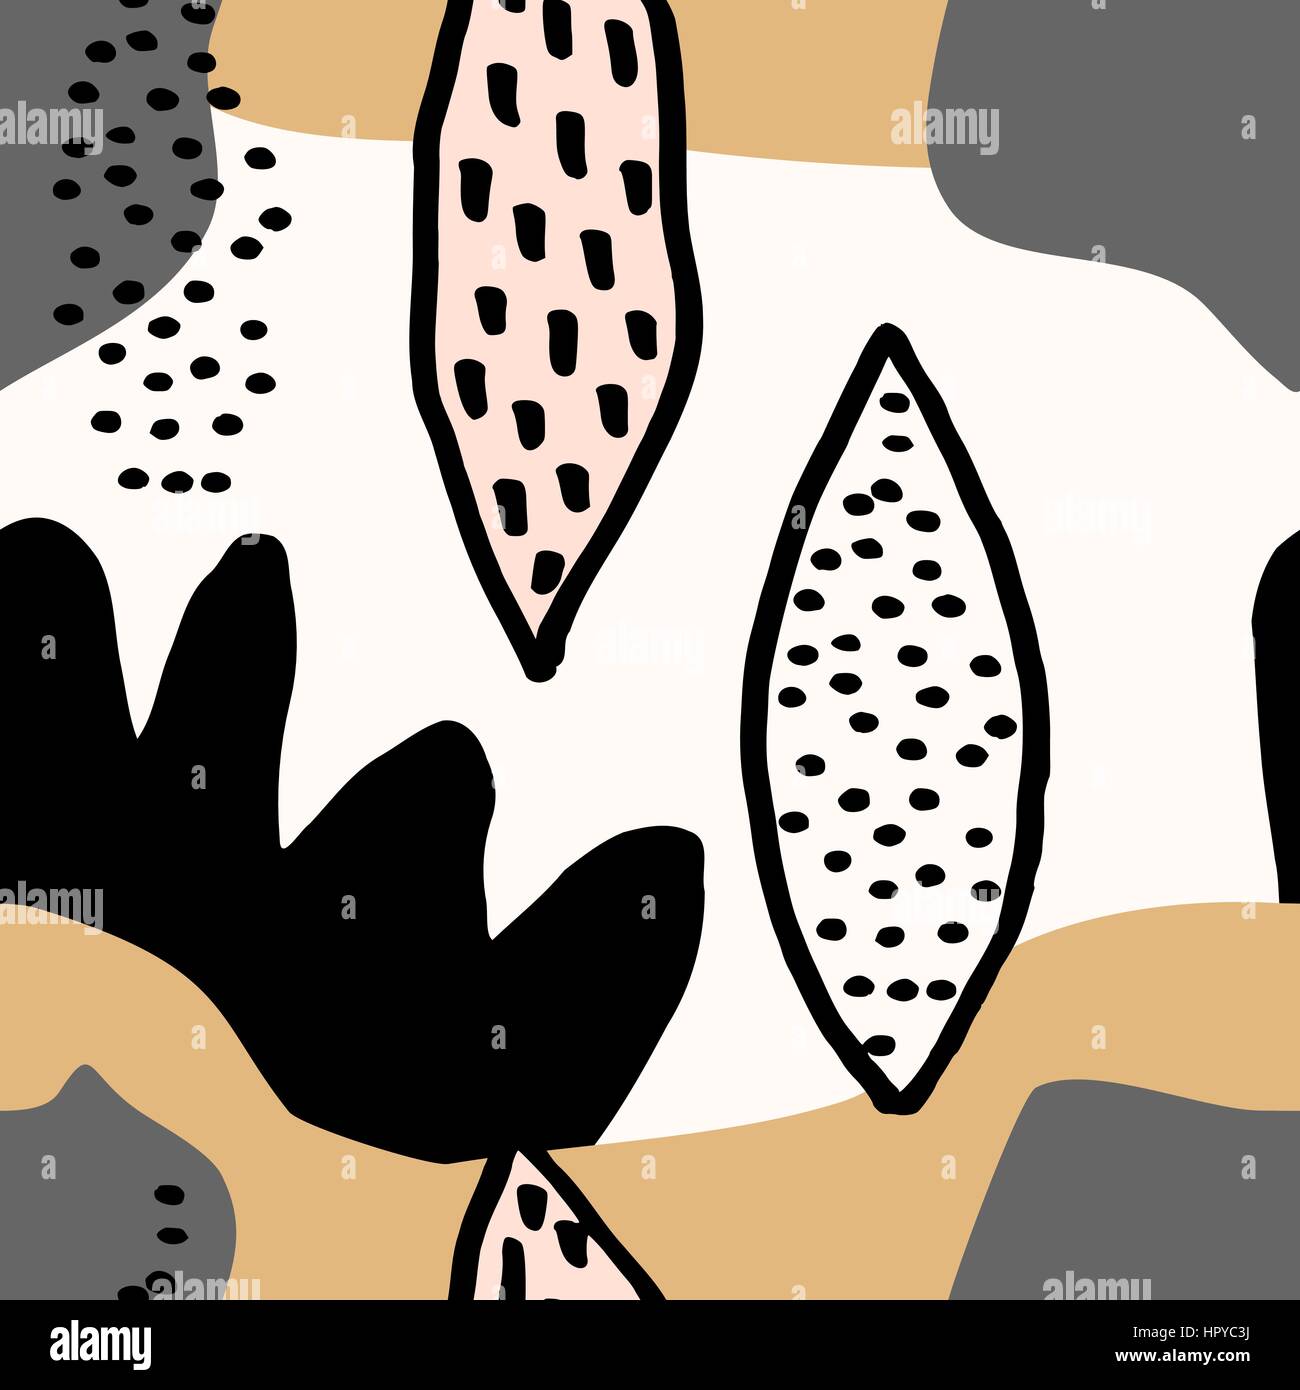 Schéma de répétition sans couture style collage abstrait avec des formes organiques et à la moutarde jaune, gris, noir et crème. Textile moderne et originale, l'emballage Illustration de Vecteur